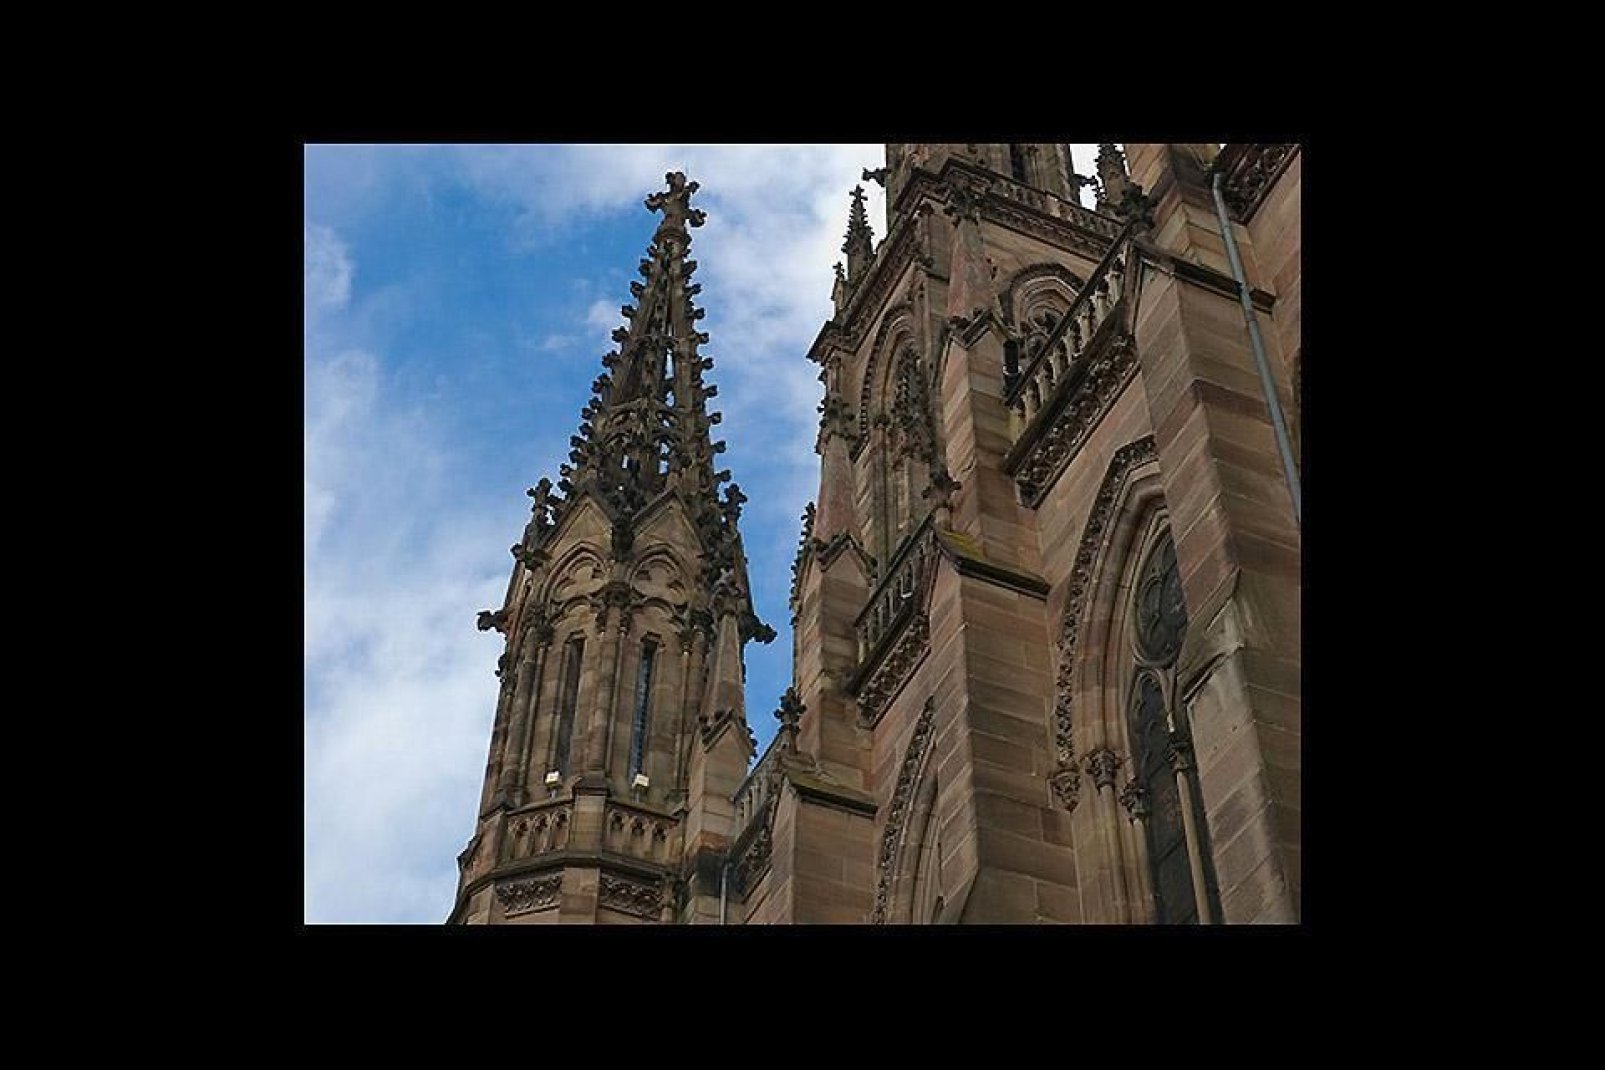 Il pinnacolo della torre dell'abside culmina a 97 metri. Per questo è il più alto campanile dell'Alto Reno.